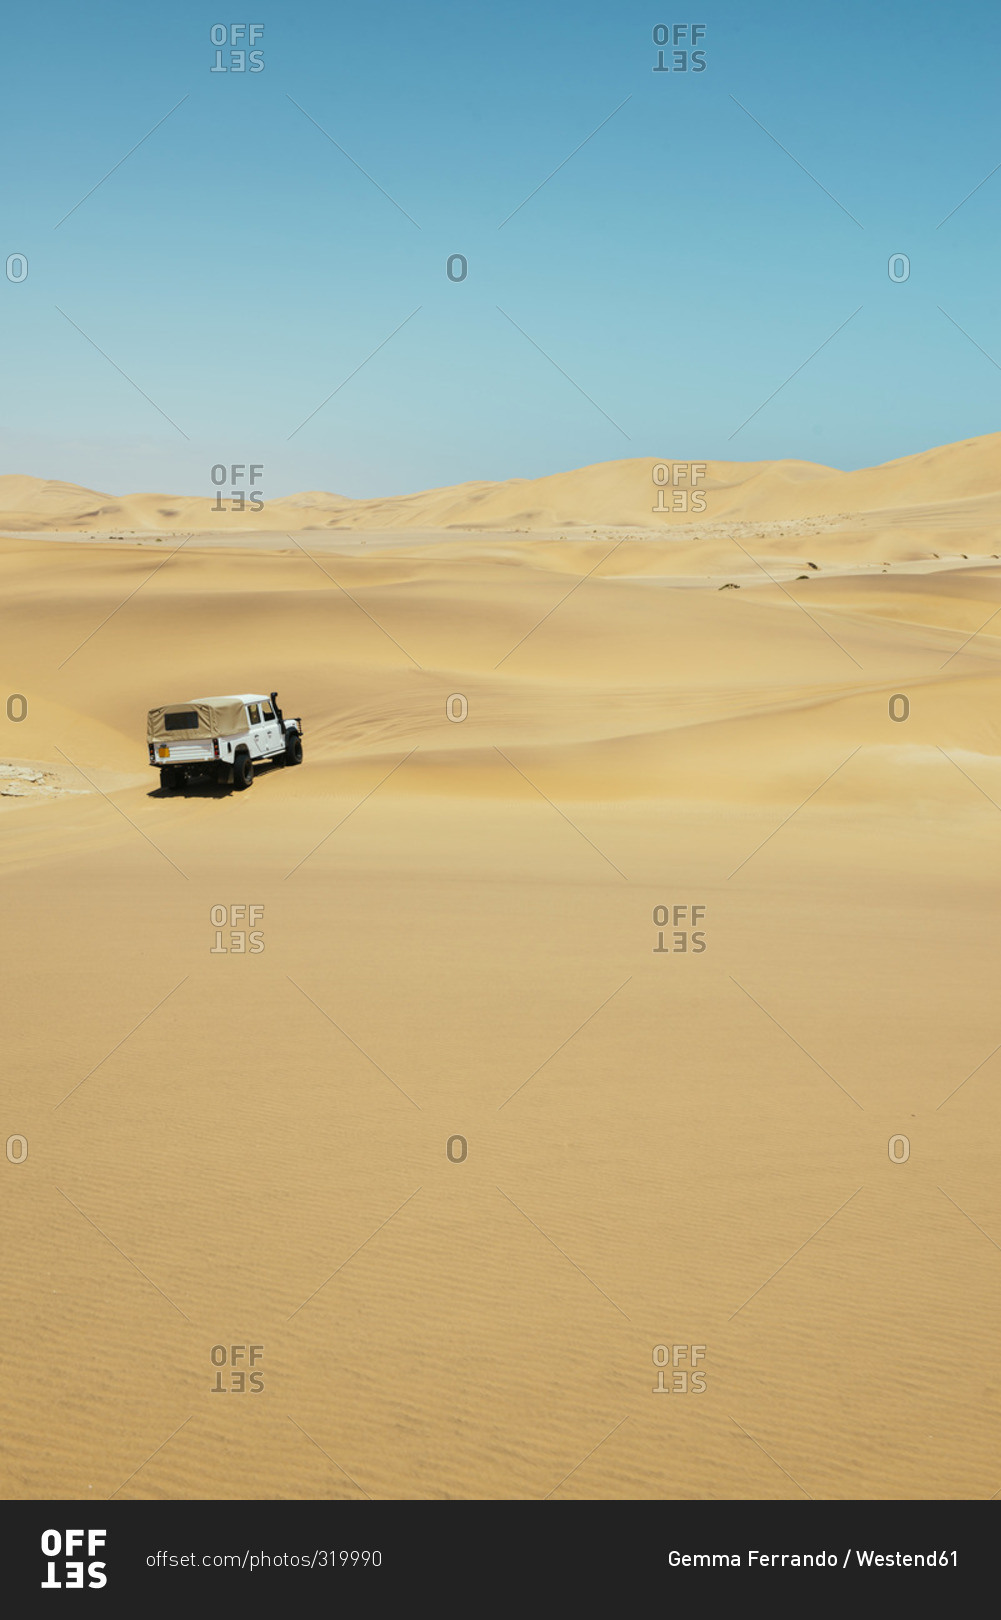 Namibia, Namib desert, Swakopmund, 4x4 car driving among the dunes in the desert